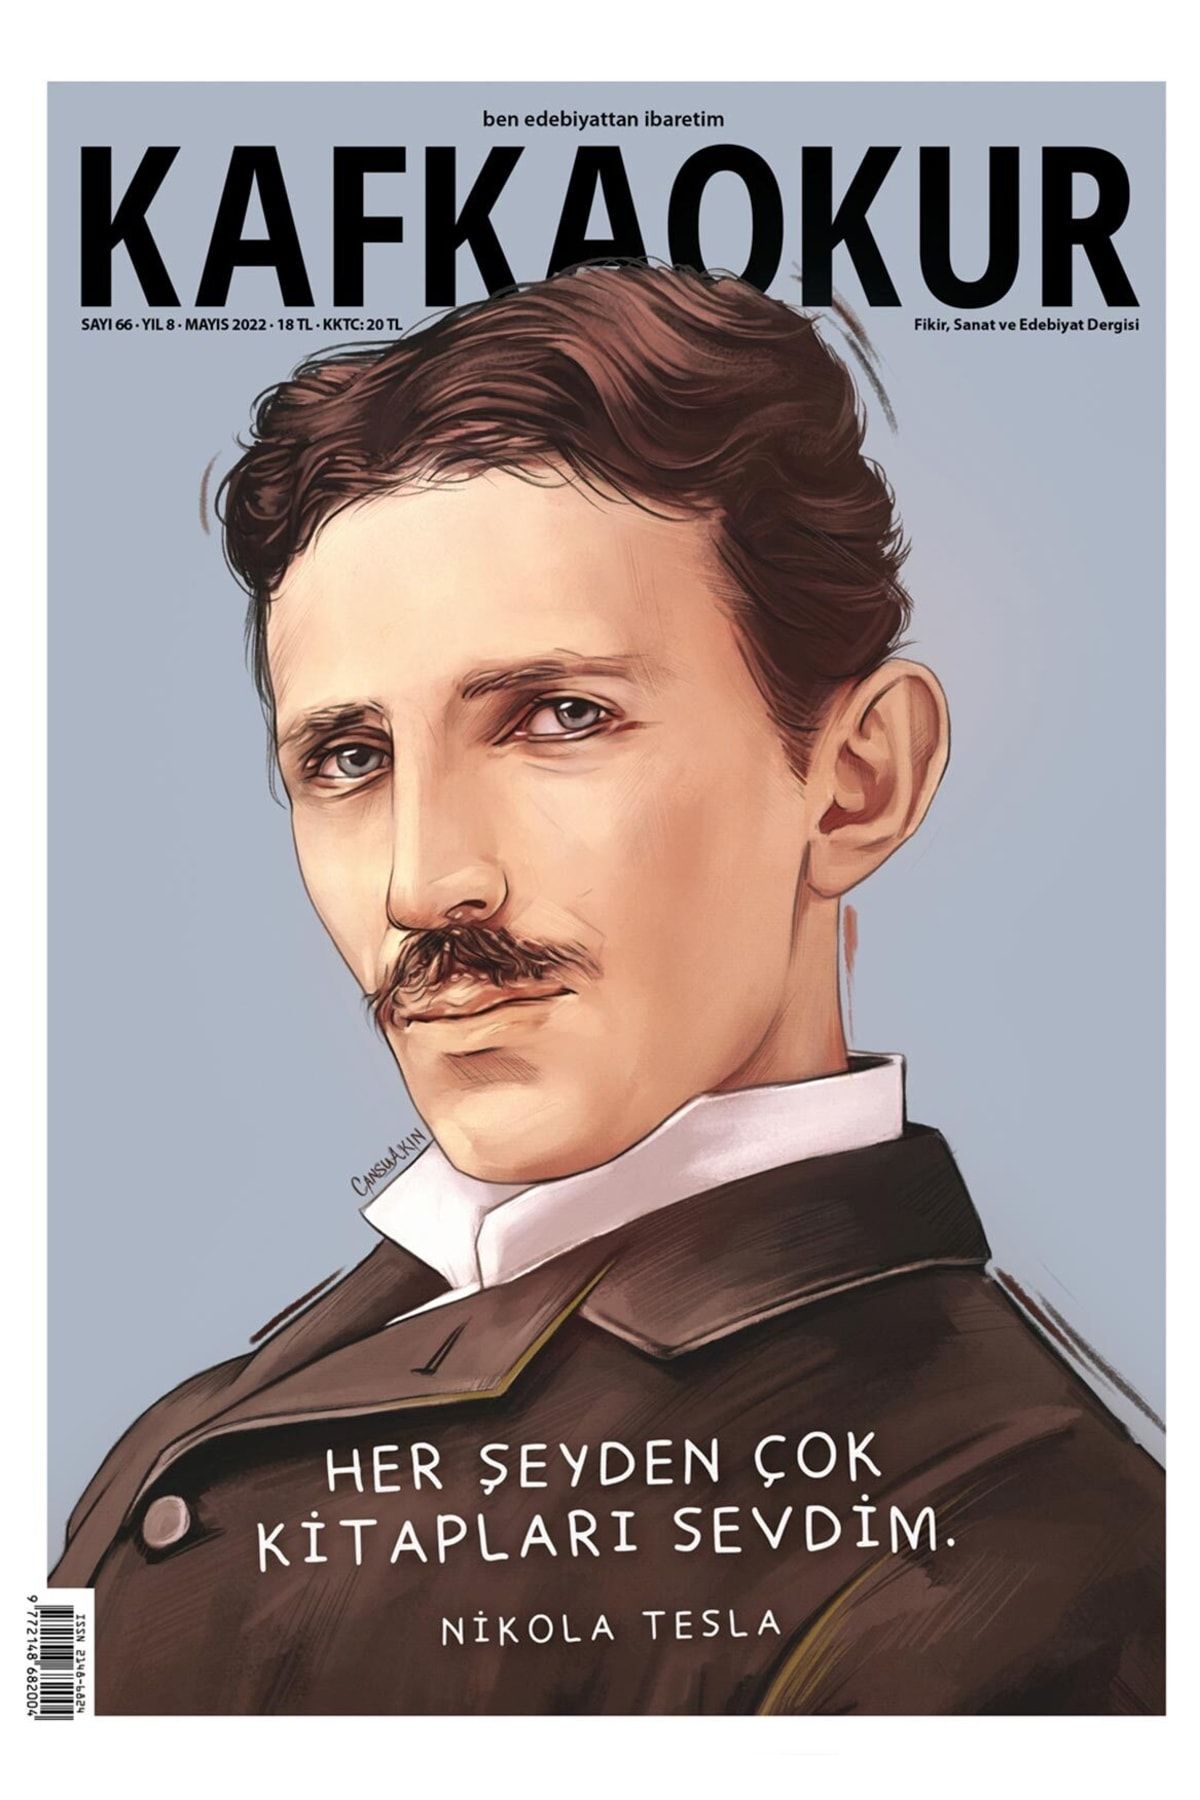 KafkaOkur Dergisi Kafkaokur Sayı 66 - Nikola Tesla - Mayıs 2022